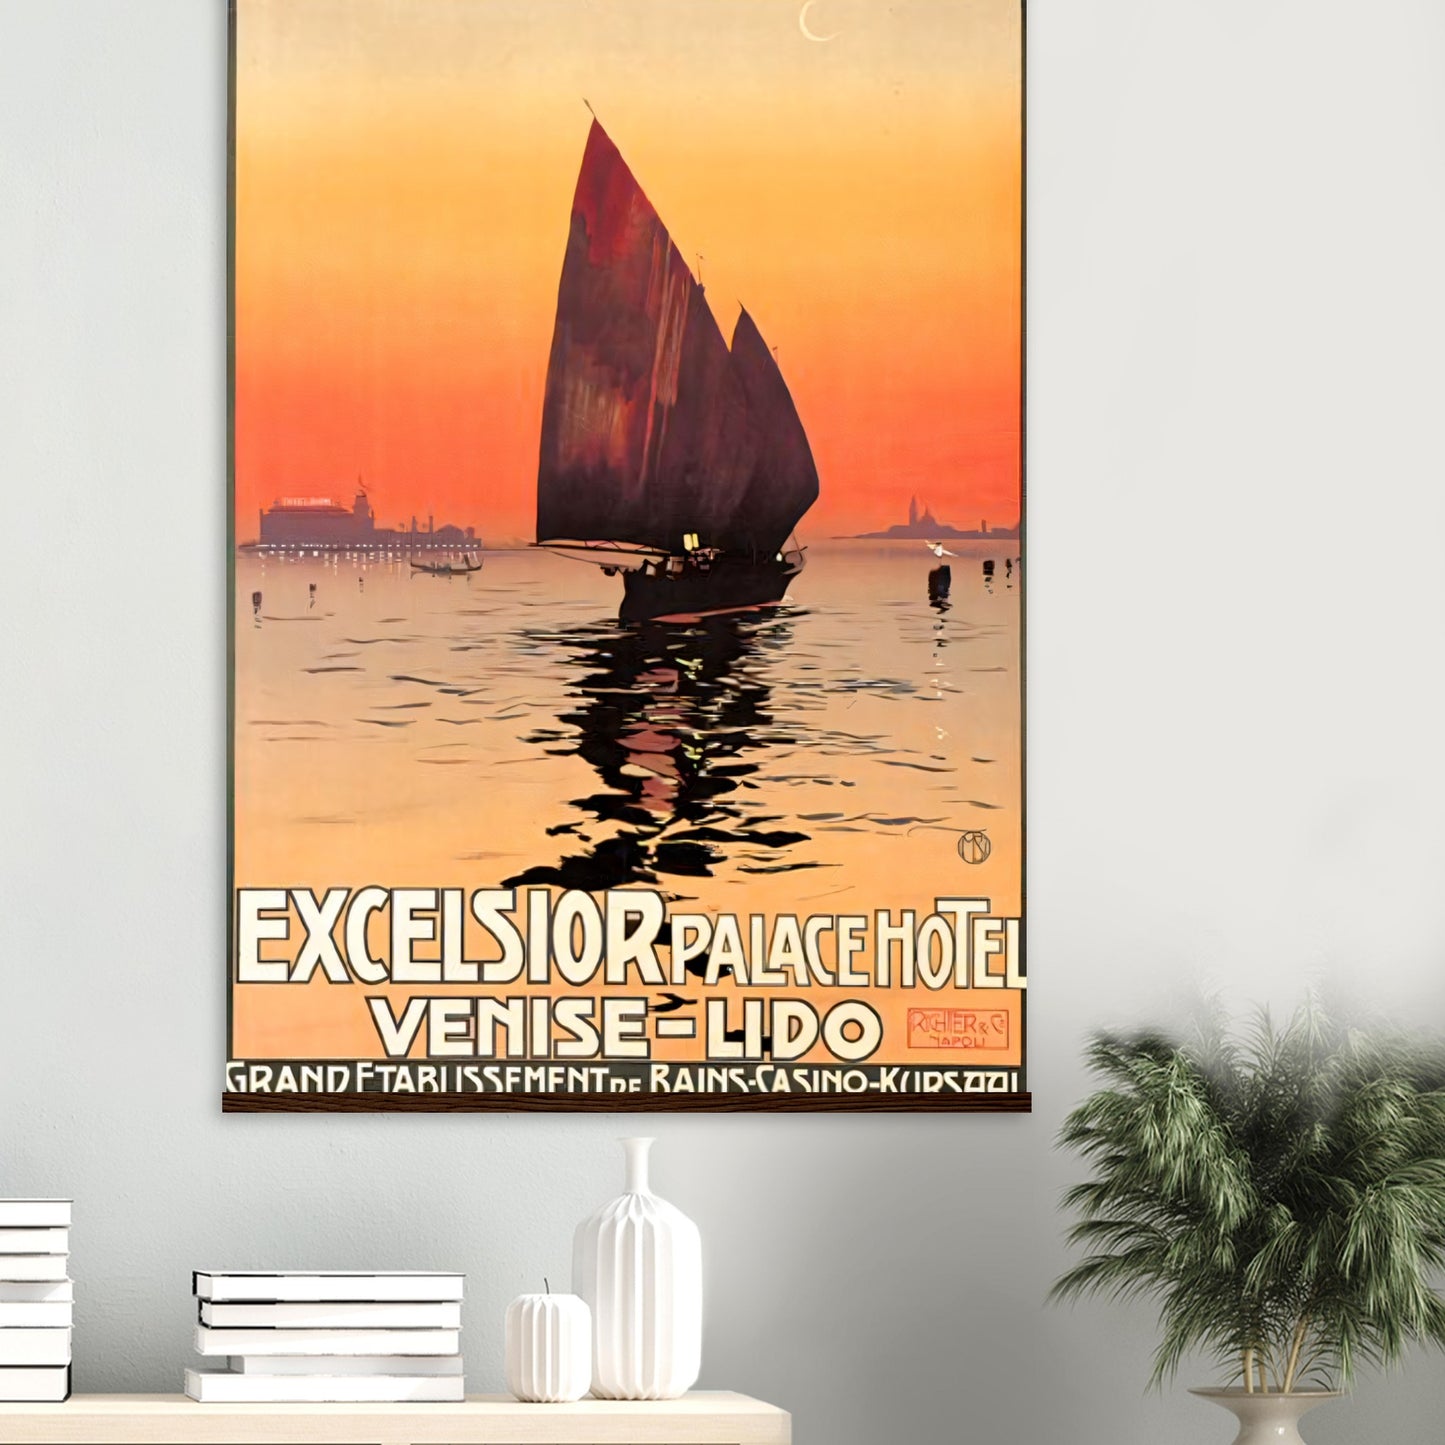 Venice Vintage Poster Reprint on premium Matte paper - Posterify